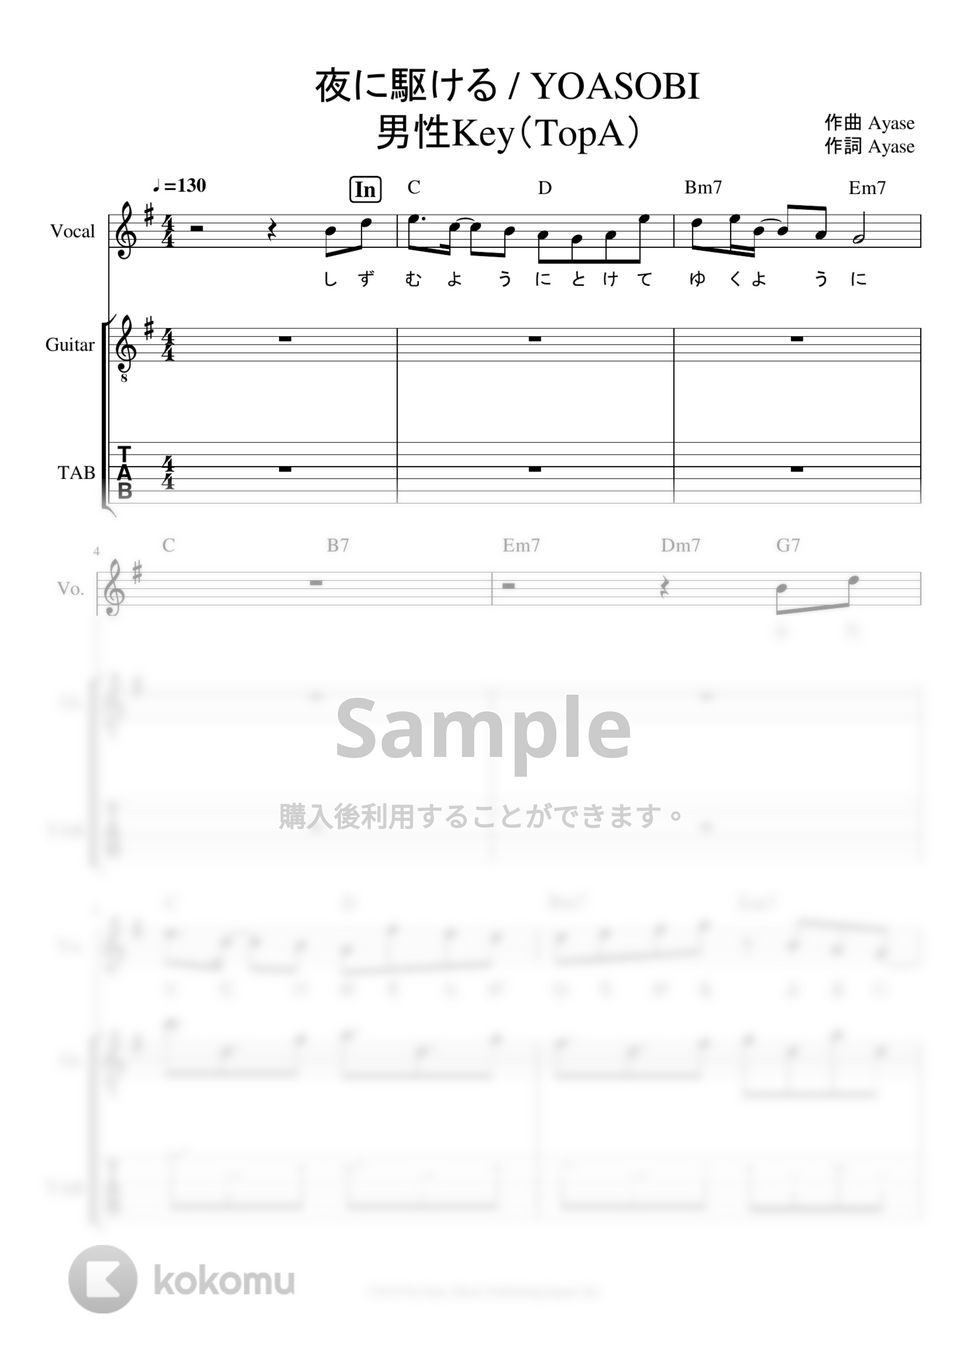 YOASOBI - ※Sample 夜に駆ける ギタータブ譜※男声アレンジ (男声キーに編曲したギタータブ譜です。) by ましまし